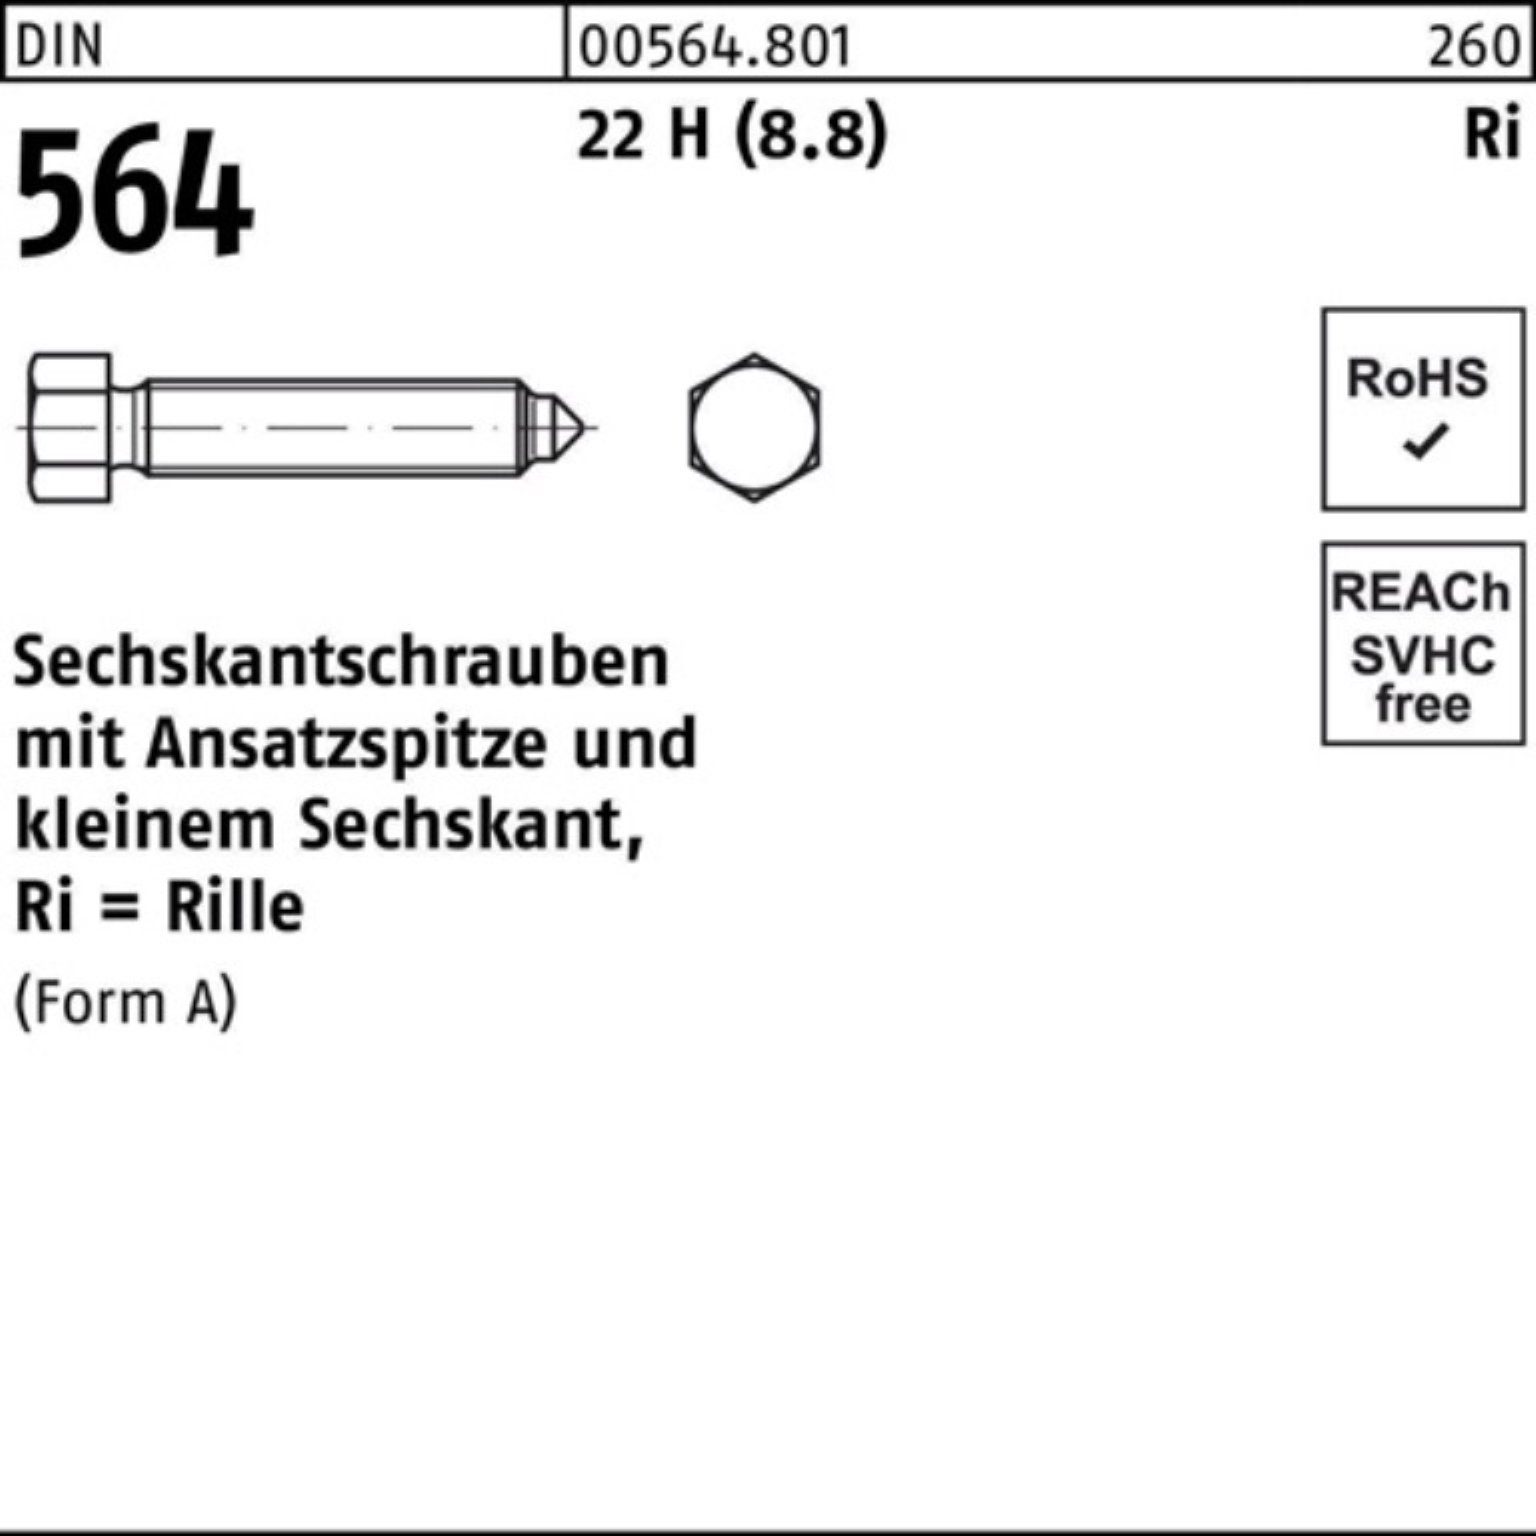 Reyher Sechskantschraube 100er Pack Sechskantschraube DIN 564 Ansatzspitze AM 10x 35 22 H (8.8)